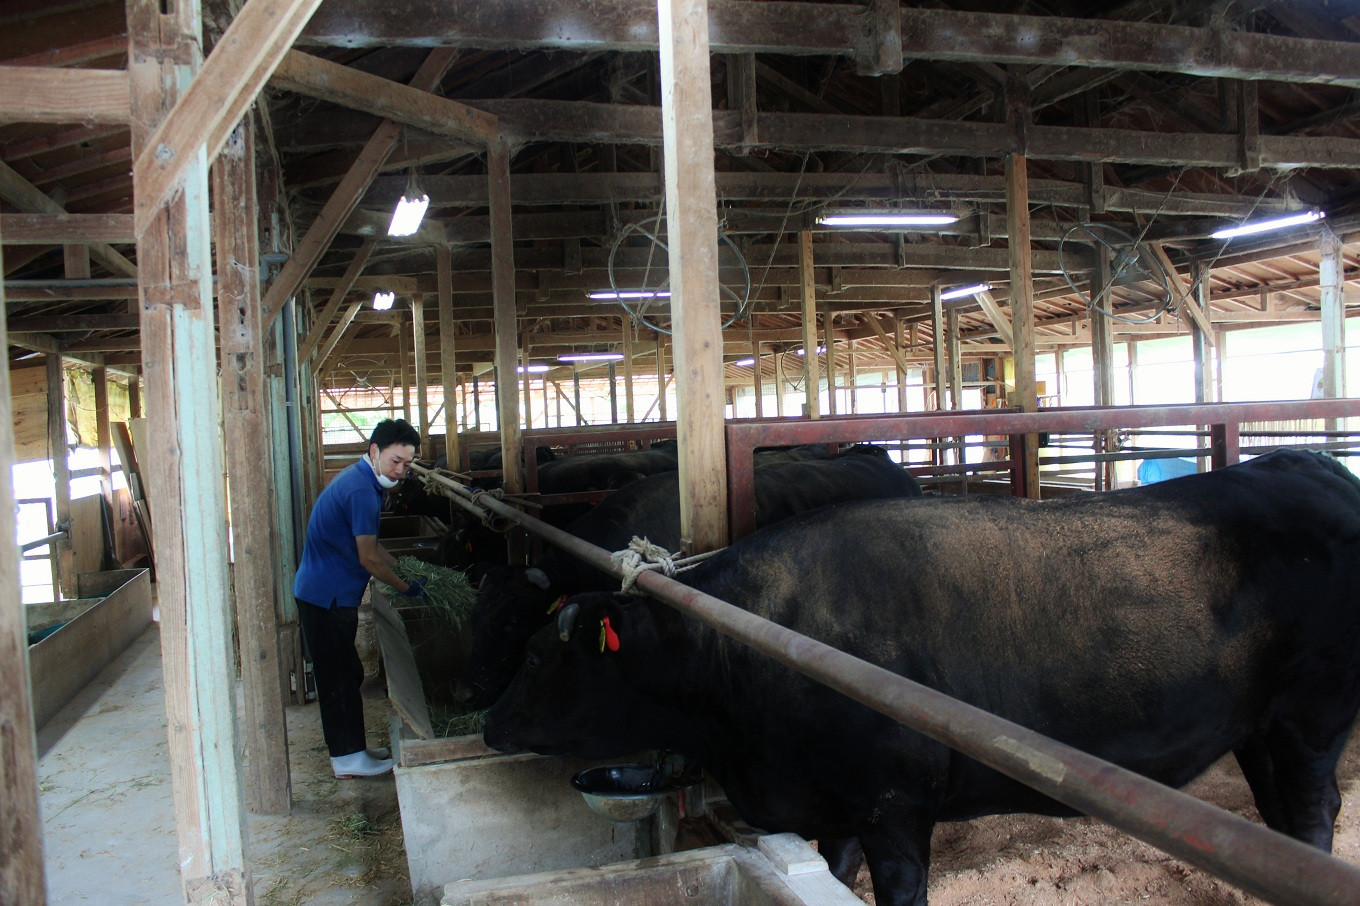 熟練の世話主によって丹波牛は大切に育てられています。